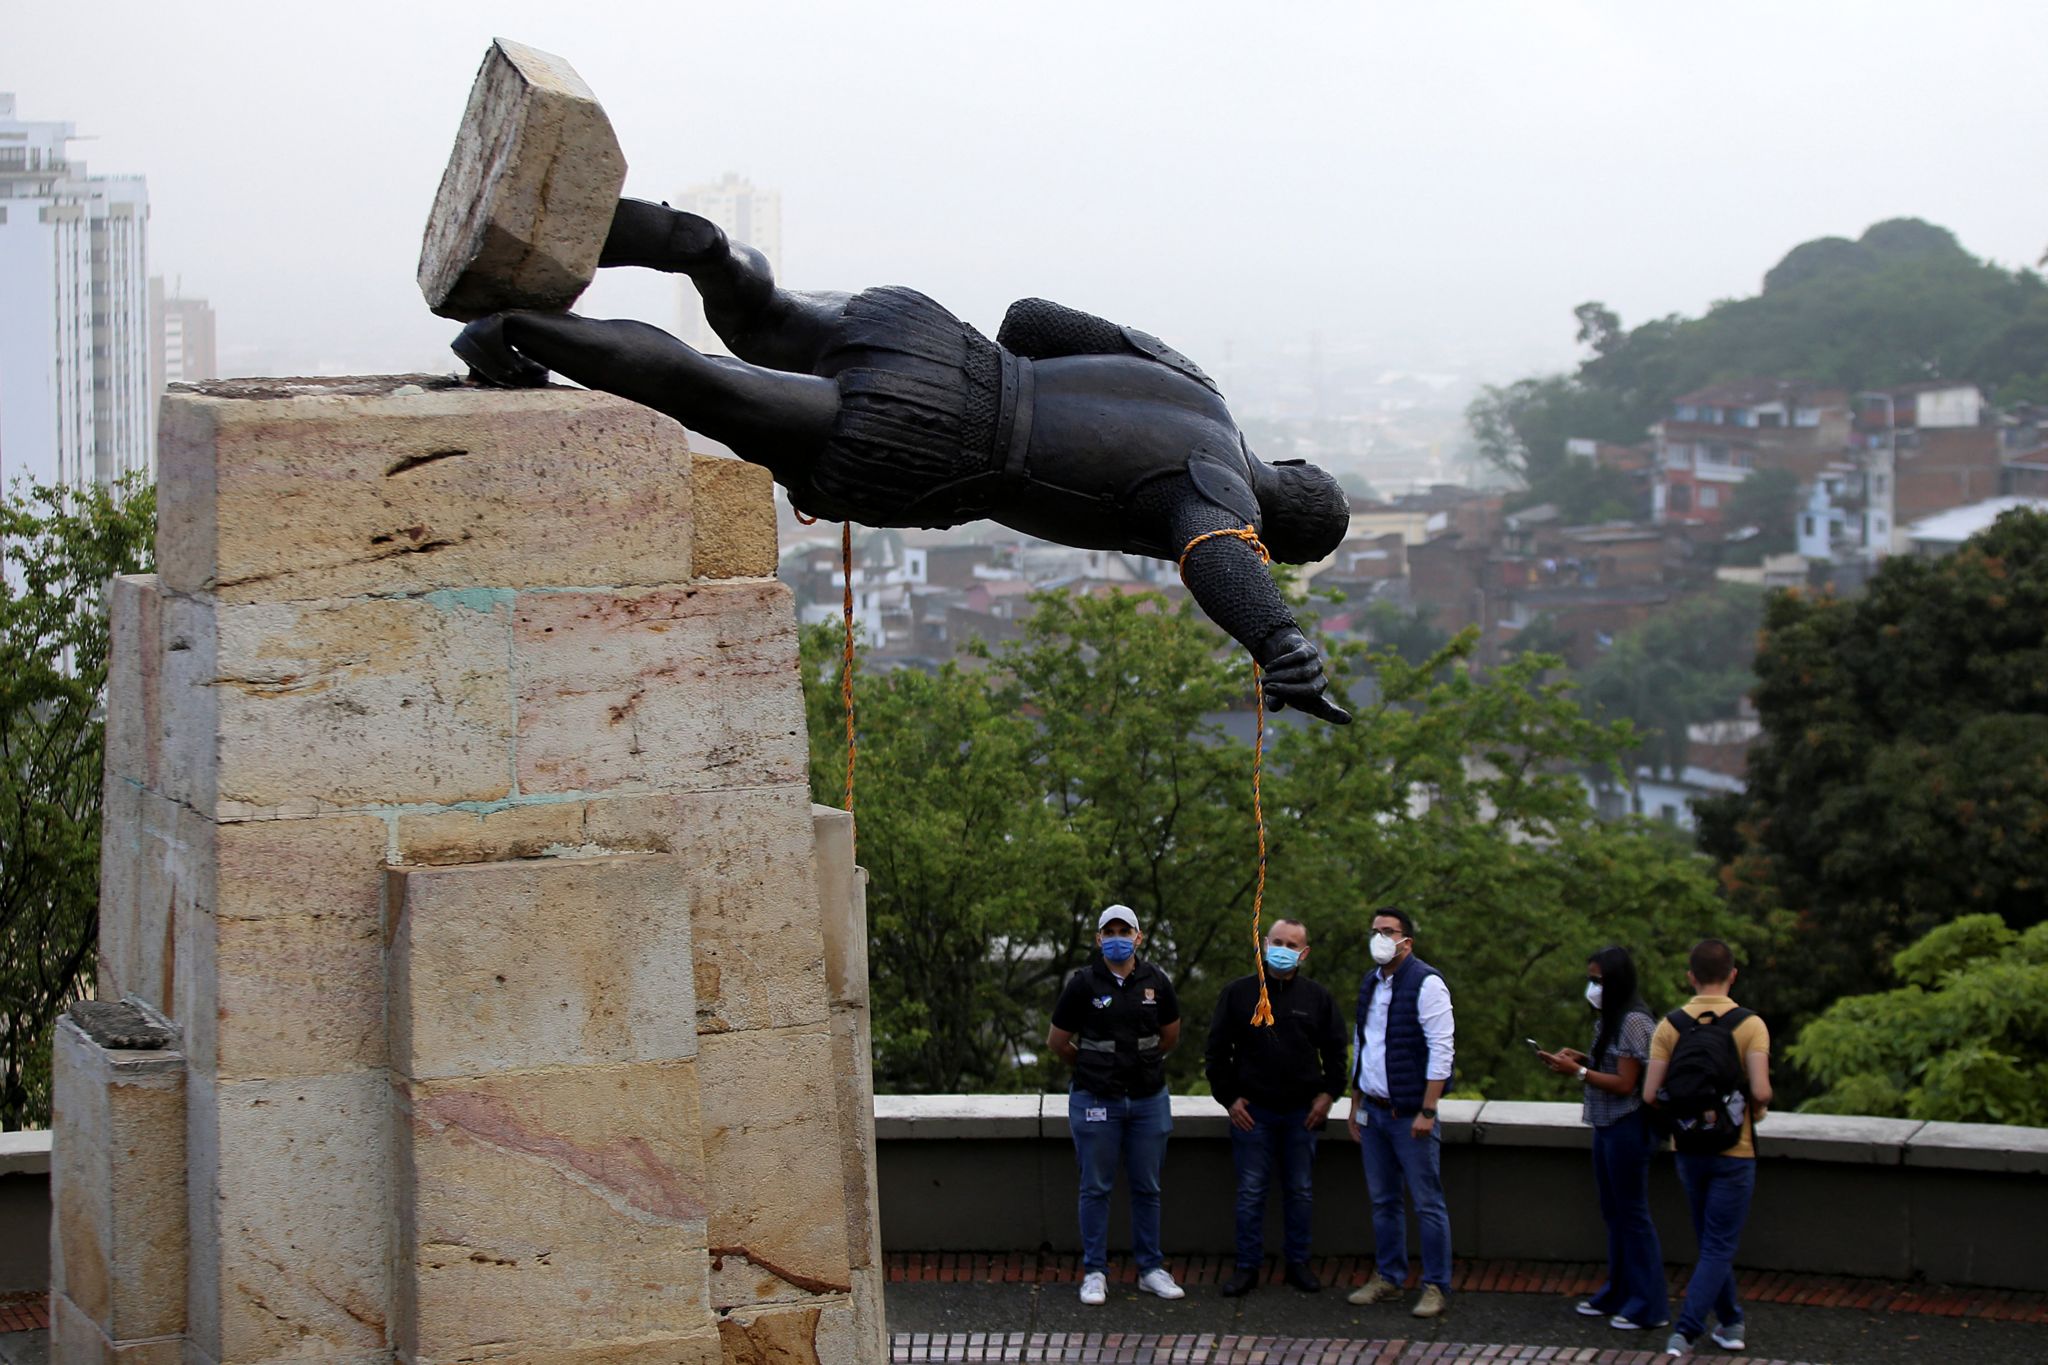 Статуя Себастьяна де Белалькасара, испанского завоевателя 16 века, лежит после того, как она была разрушена коренными жителями в Кали, Колумбия, 28 апреля 2021 года. -